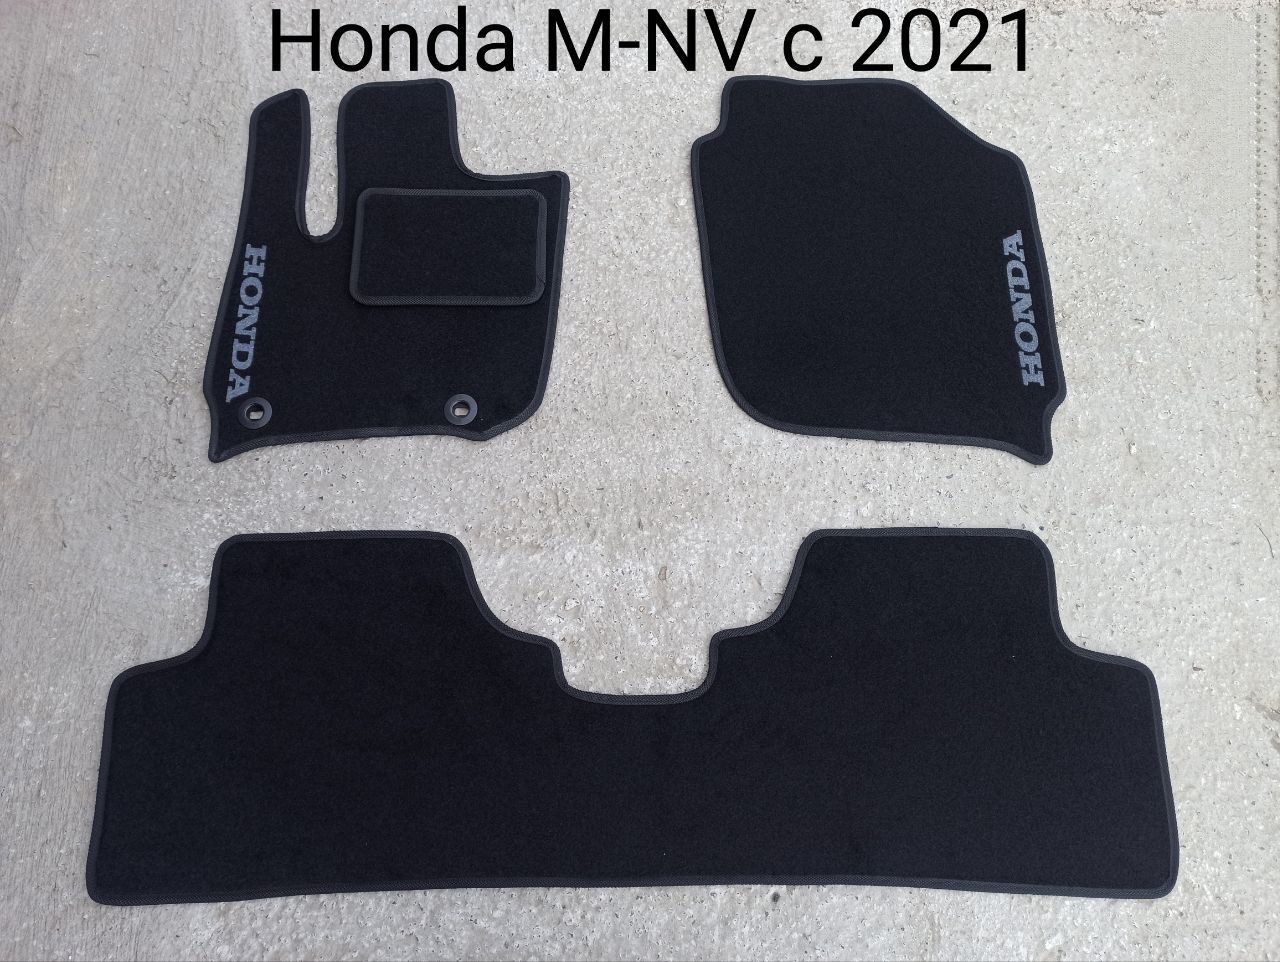 В наявності автомобільні коврики Honda M-NV c 2021